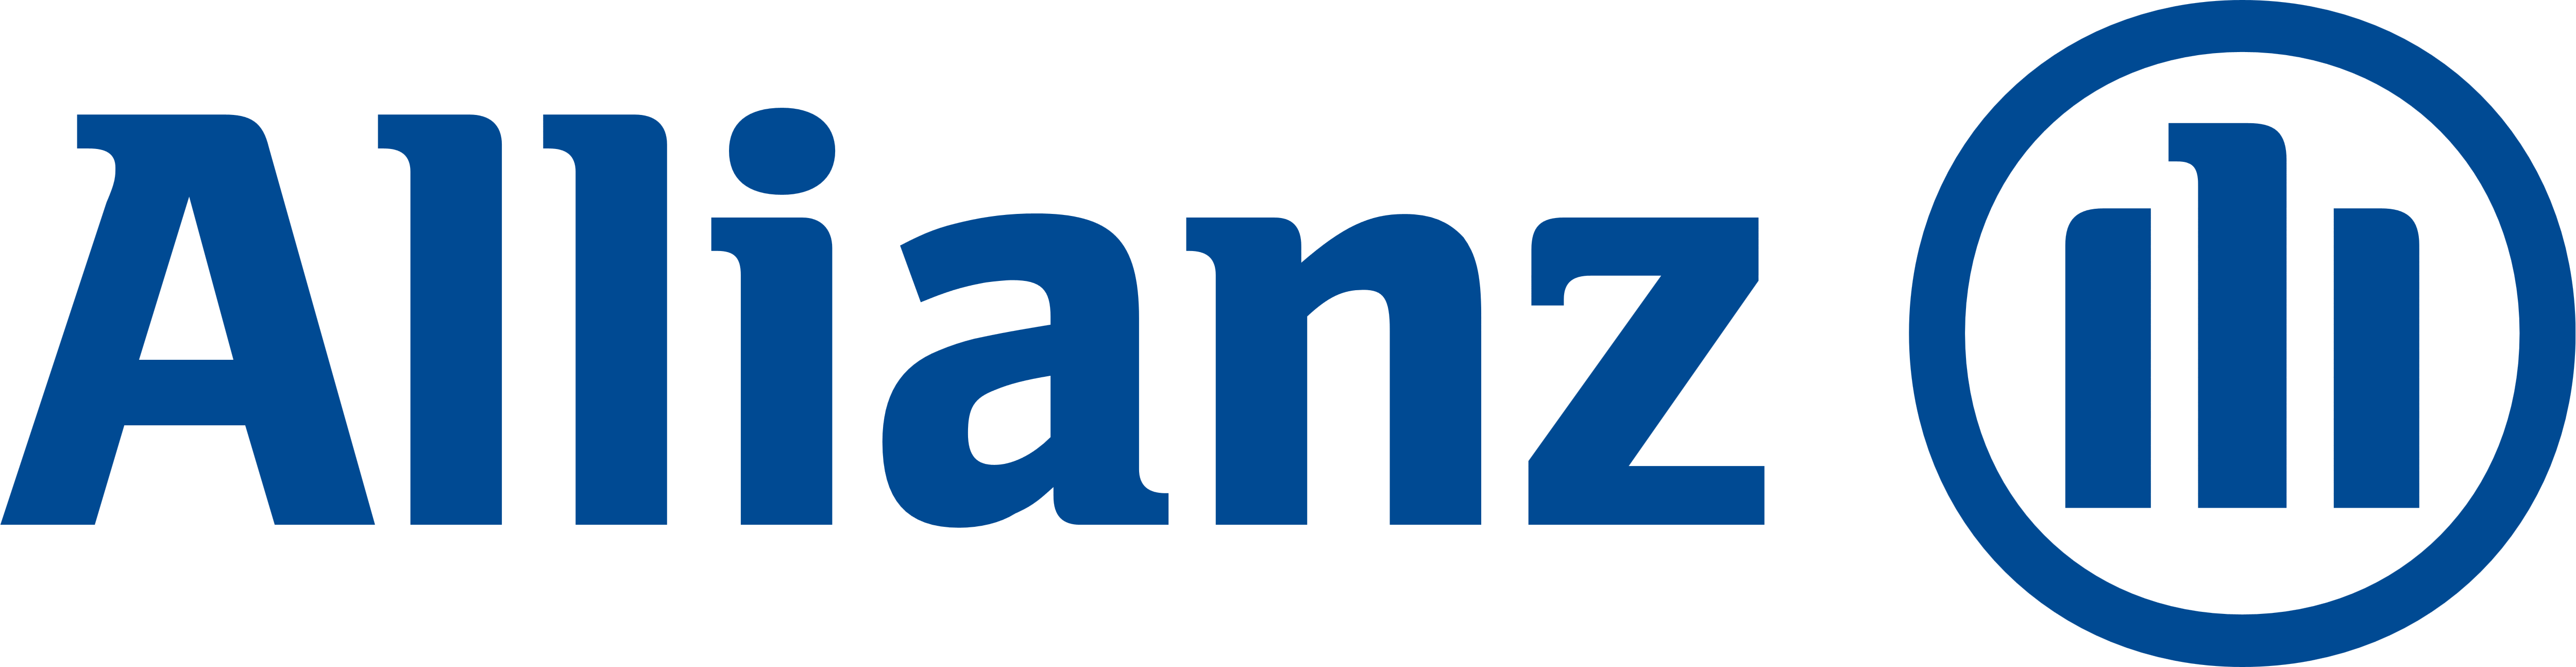 Allianz logo.png